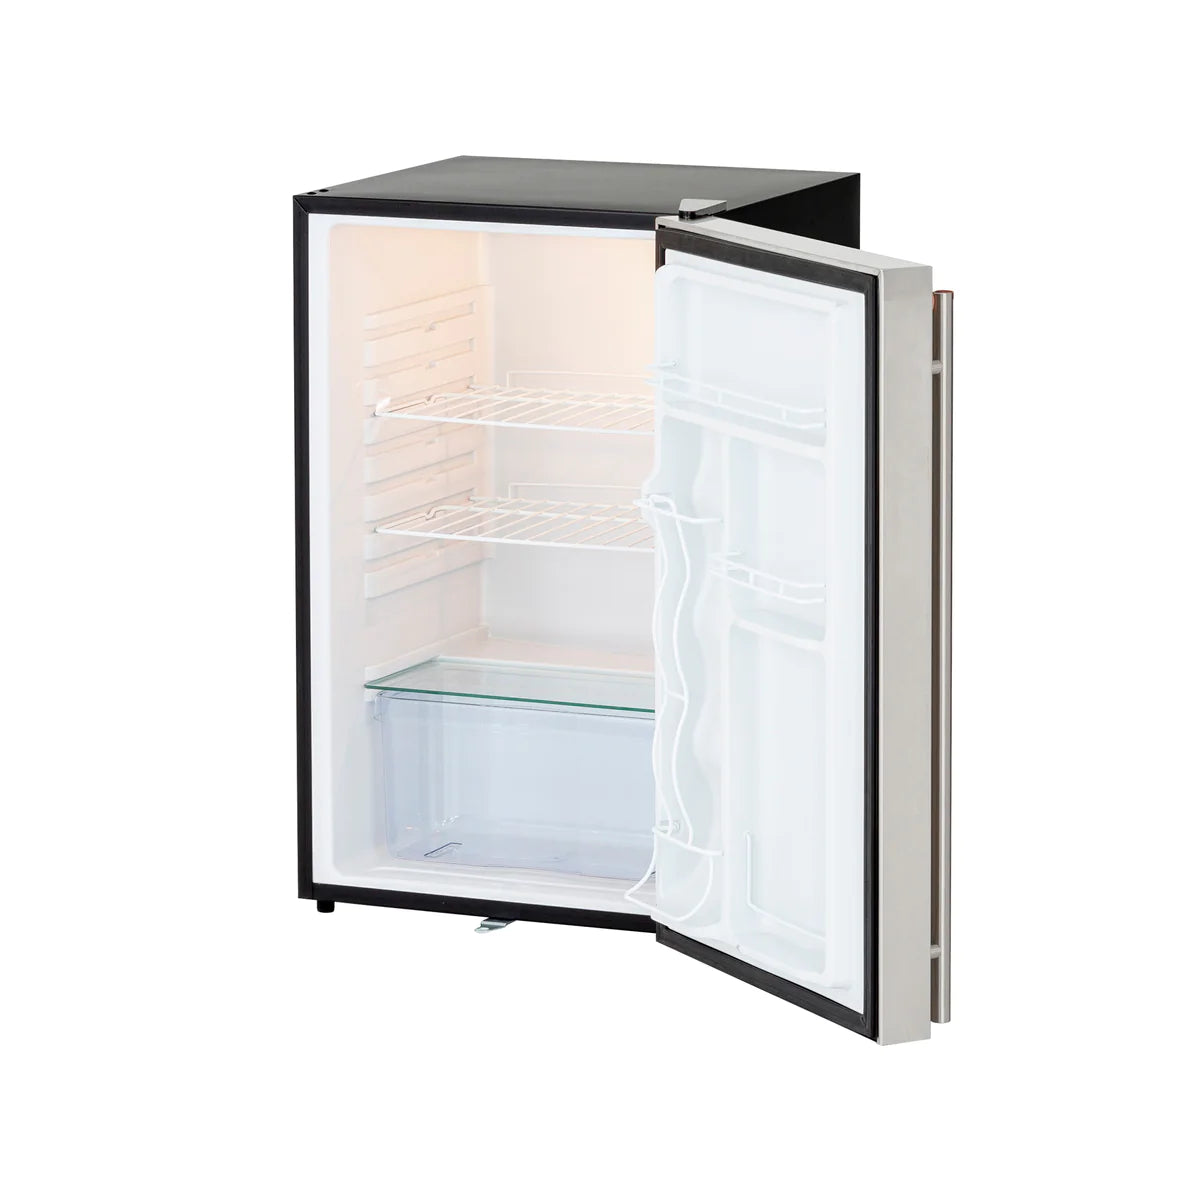 Sumerset 21" 4.2c Deluxe Compact Refrigerator